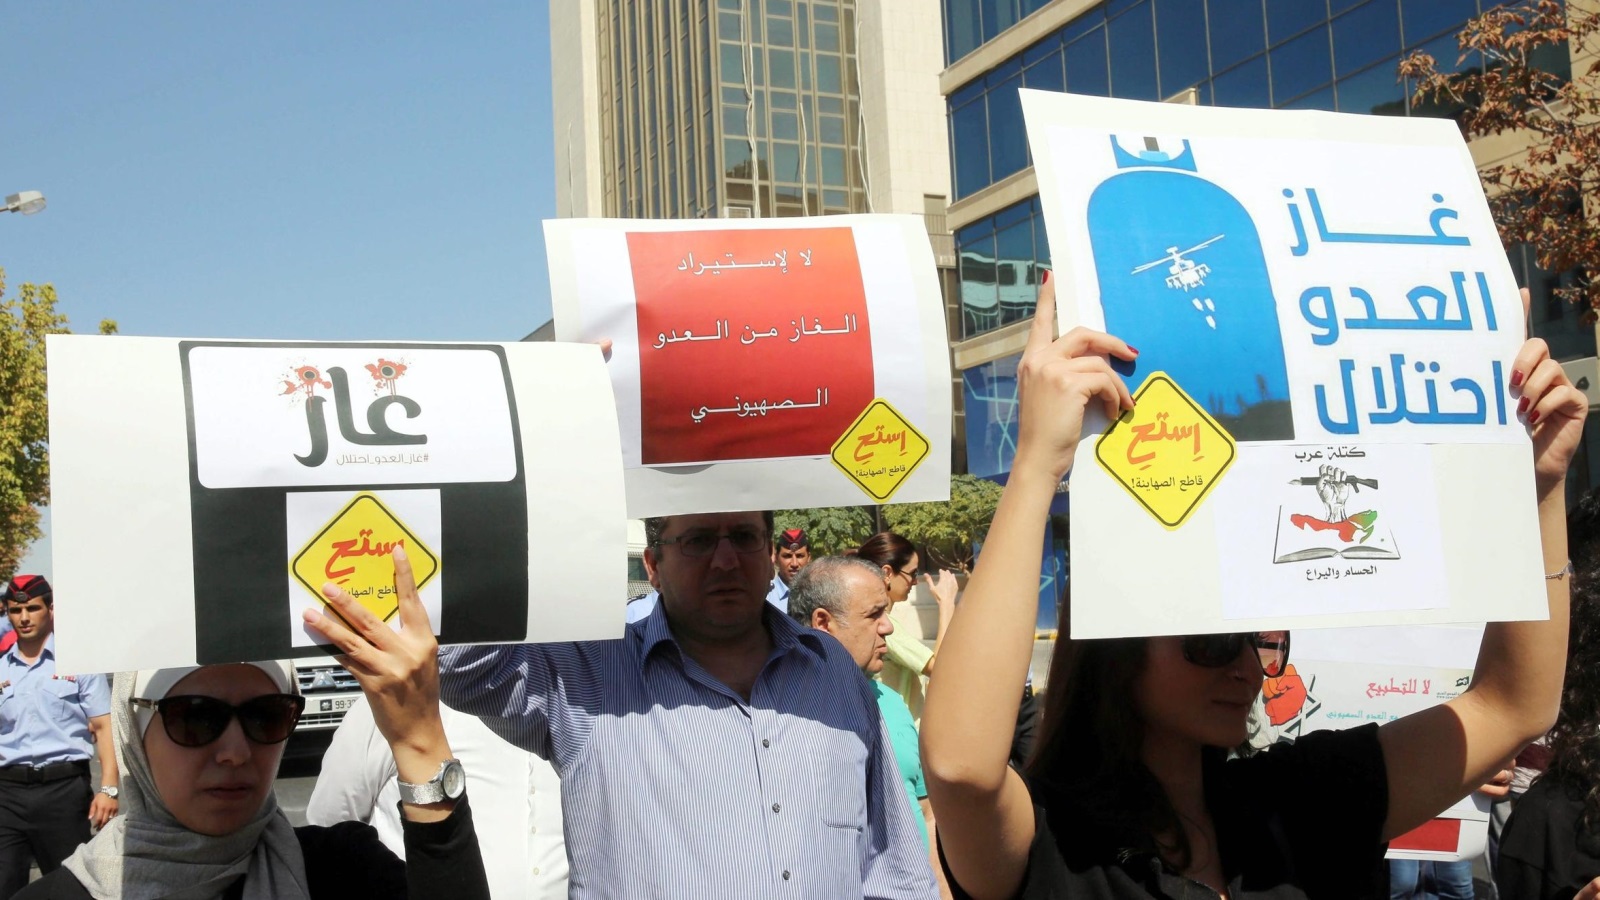 ‪أردنيون تظاهروا قبل أسبوع في عمان رفضا لاتفاقية استيراد الغاز الإسرائيلي‬ (الأوروبية)